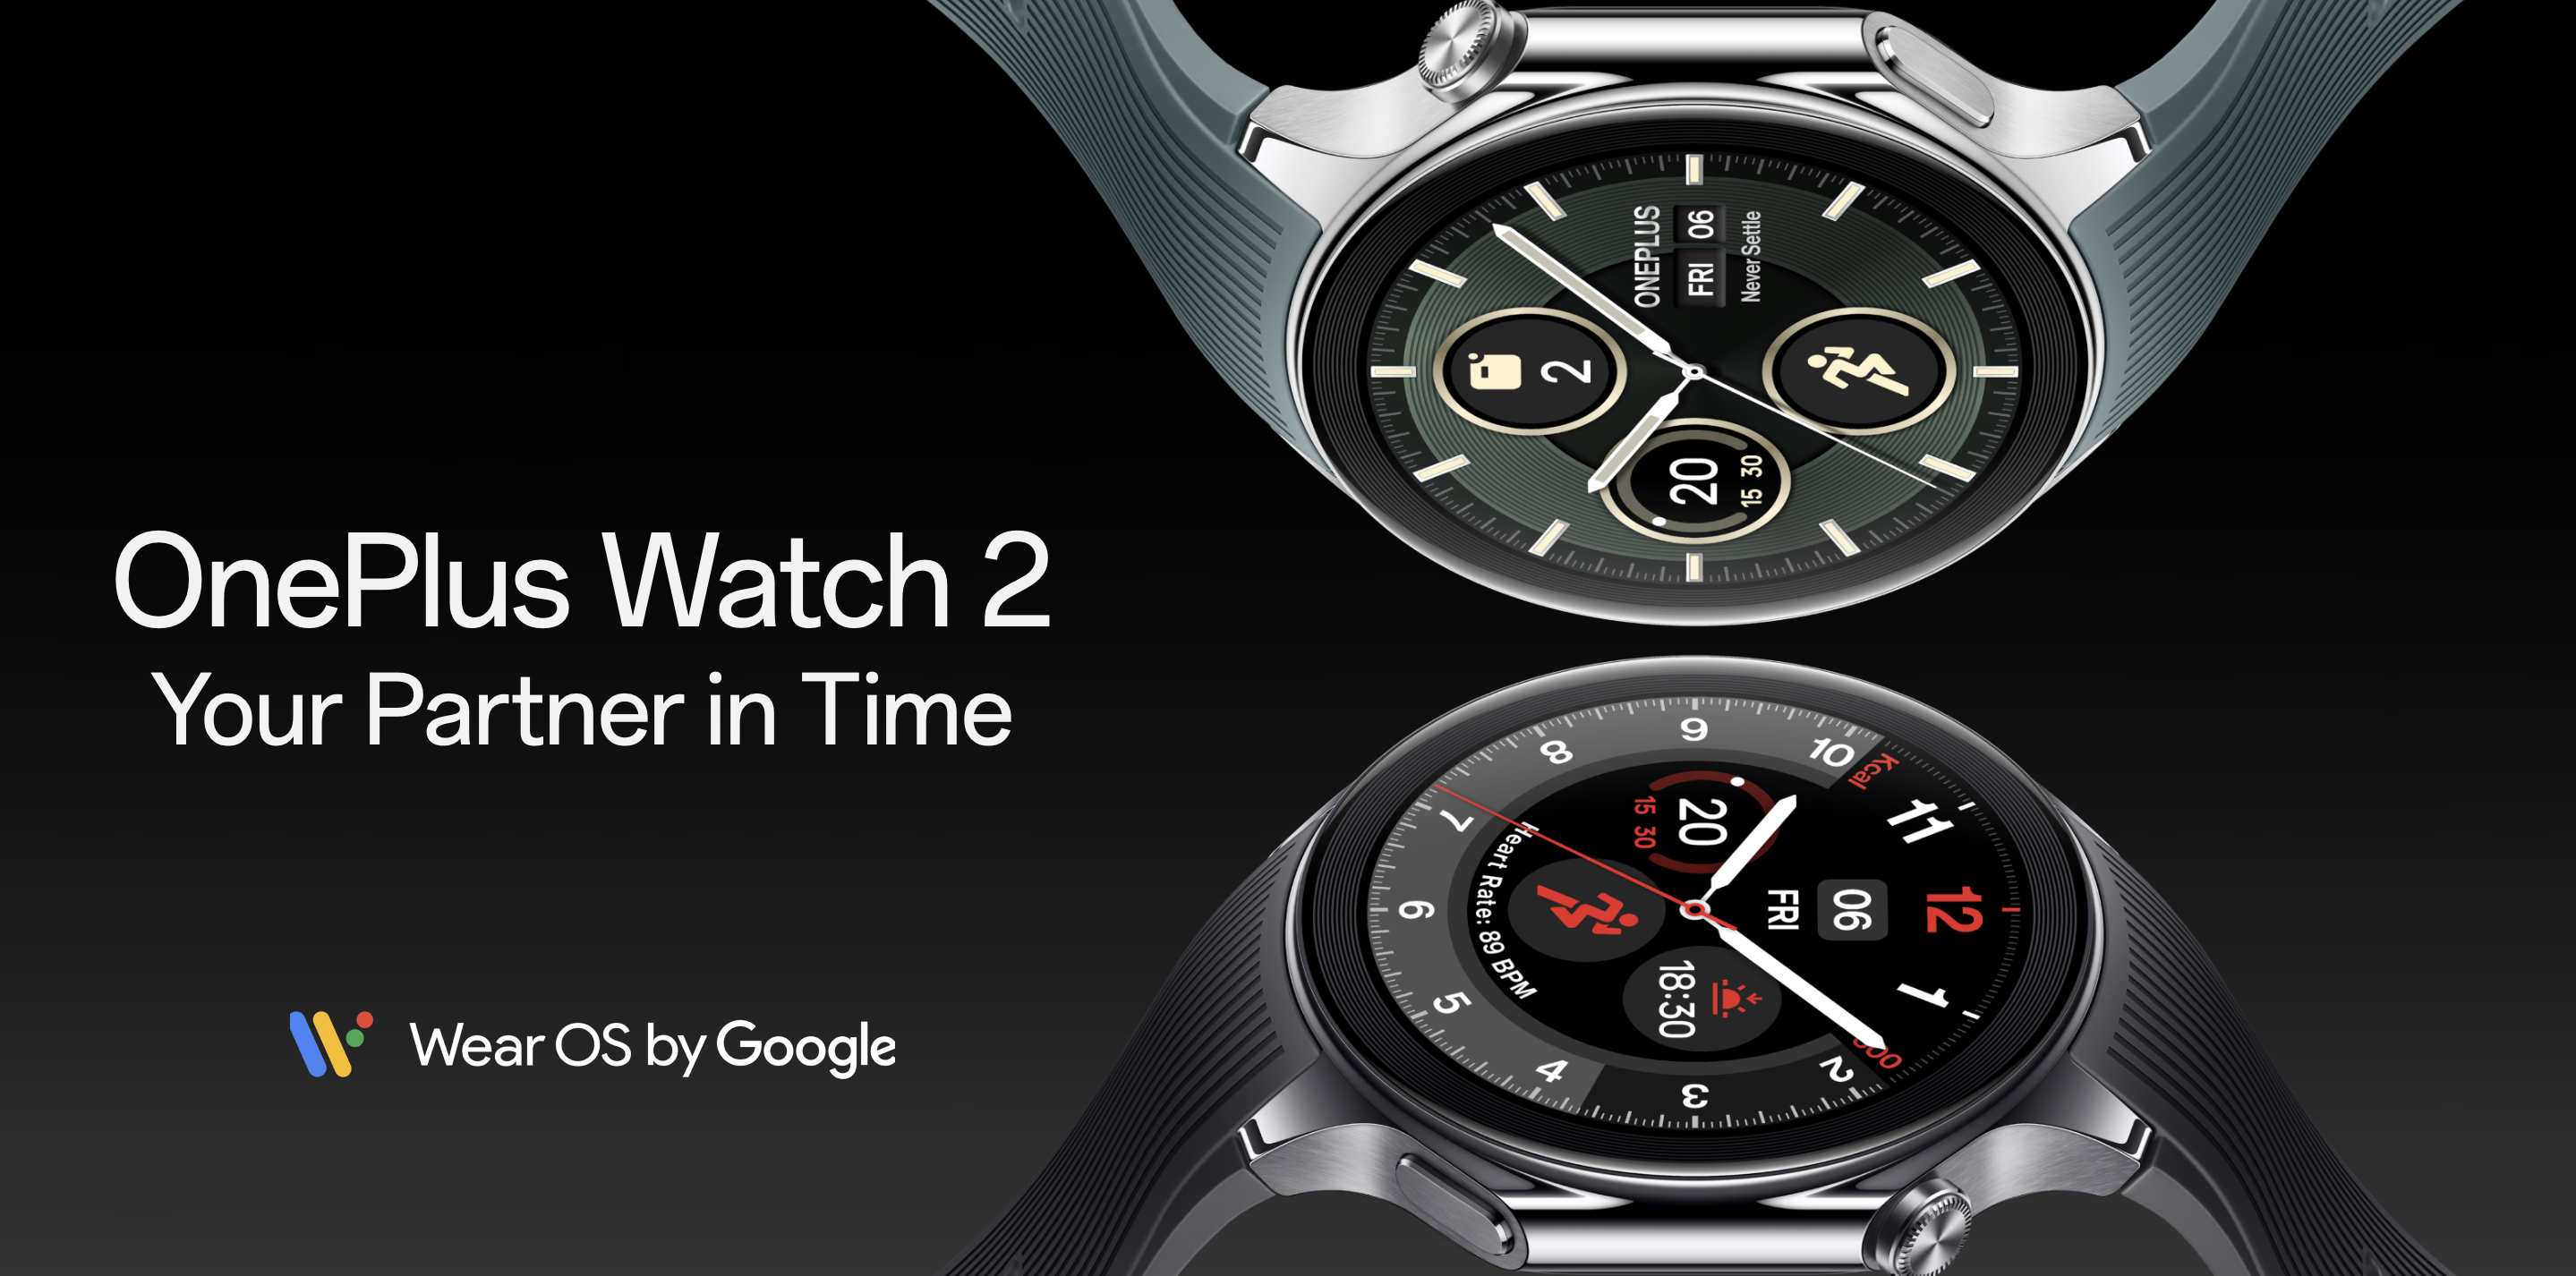 OnePlus Watch 2 : une smartwatch dotée de deux puces, de deux systèmes d'exploitation et d'une autonomie pouvant atteindre 12 jours